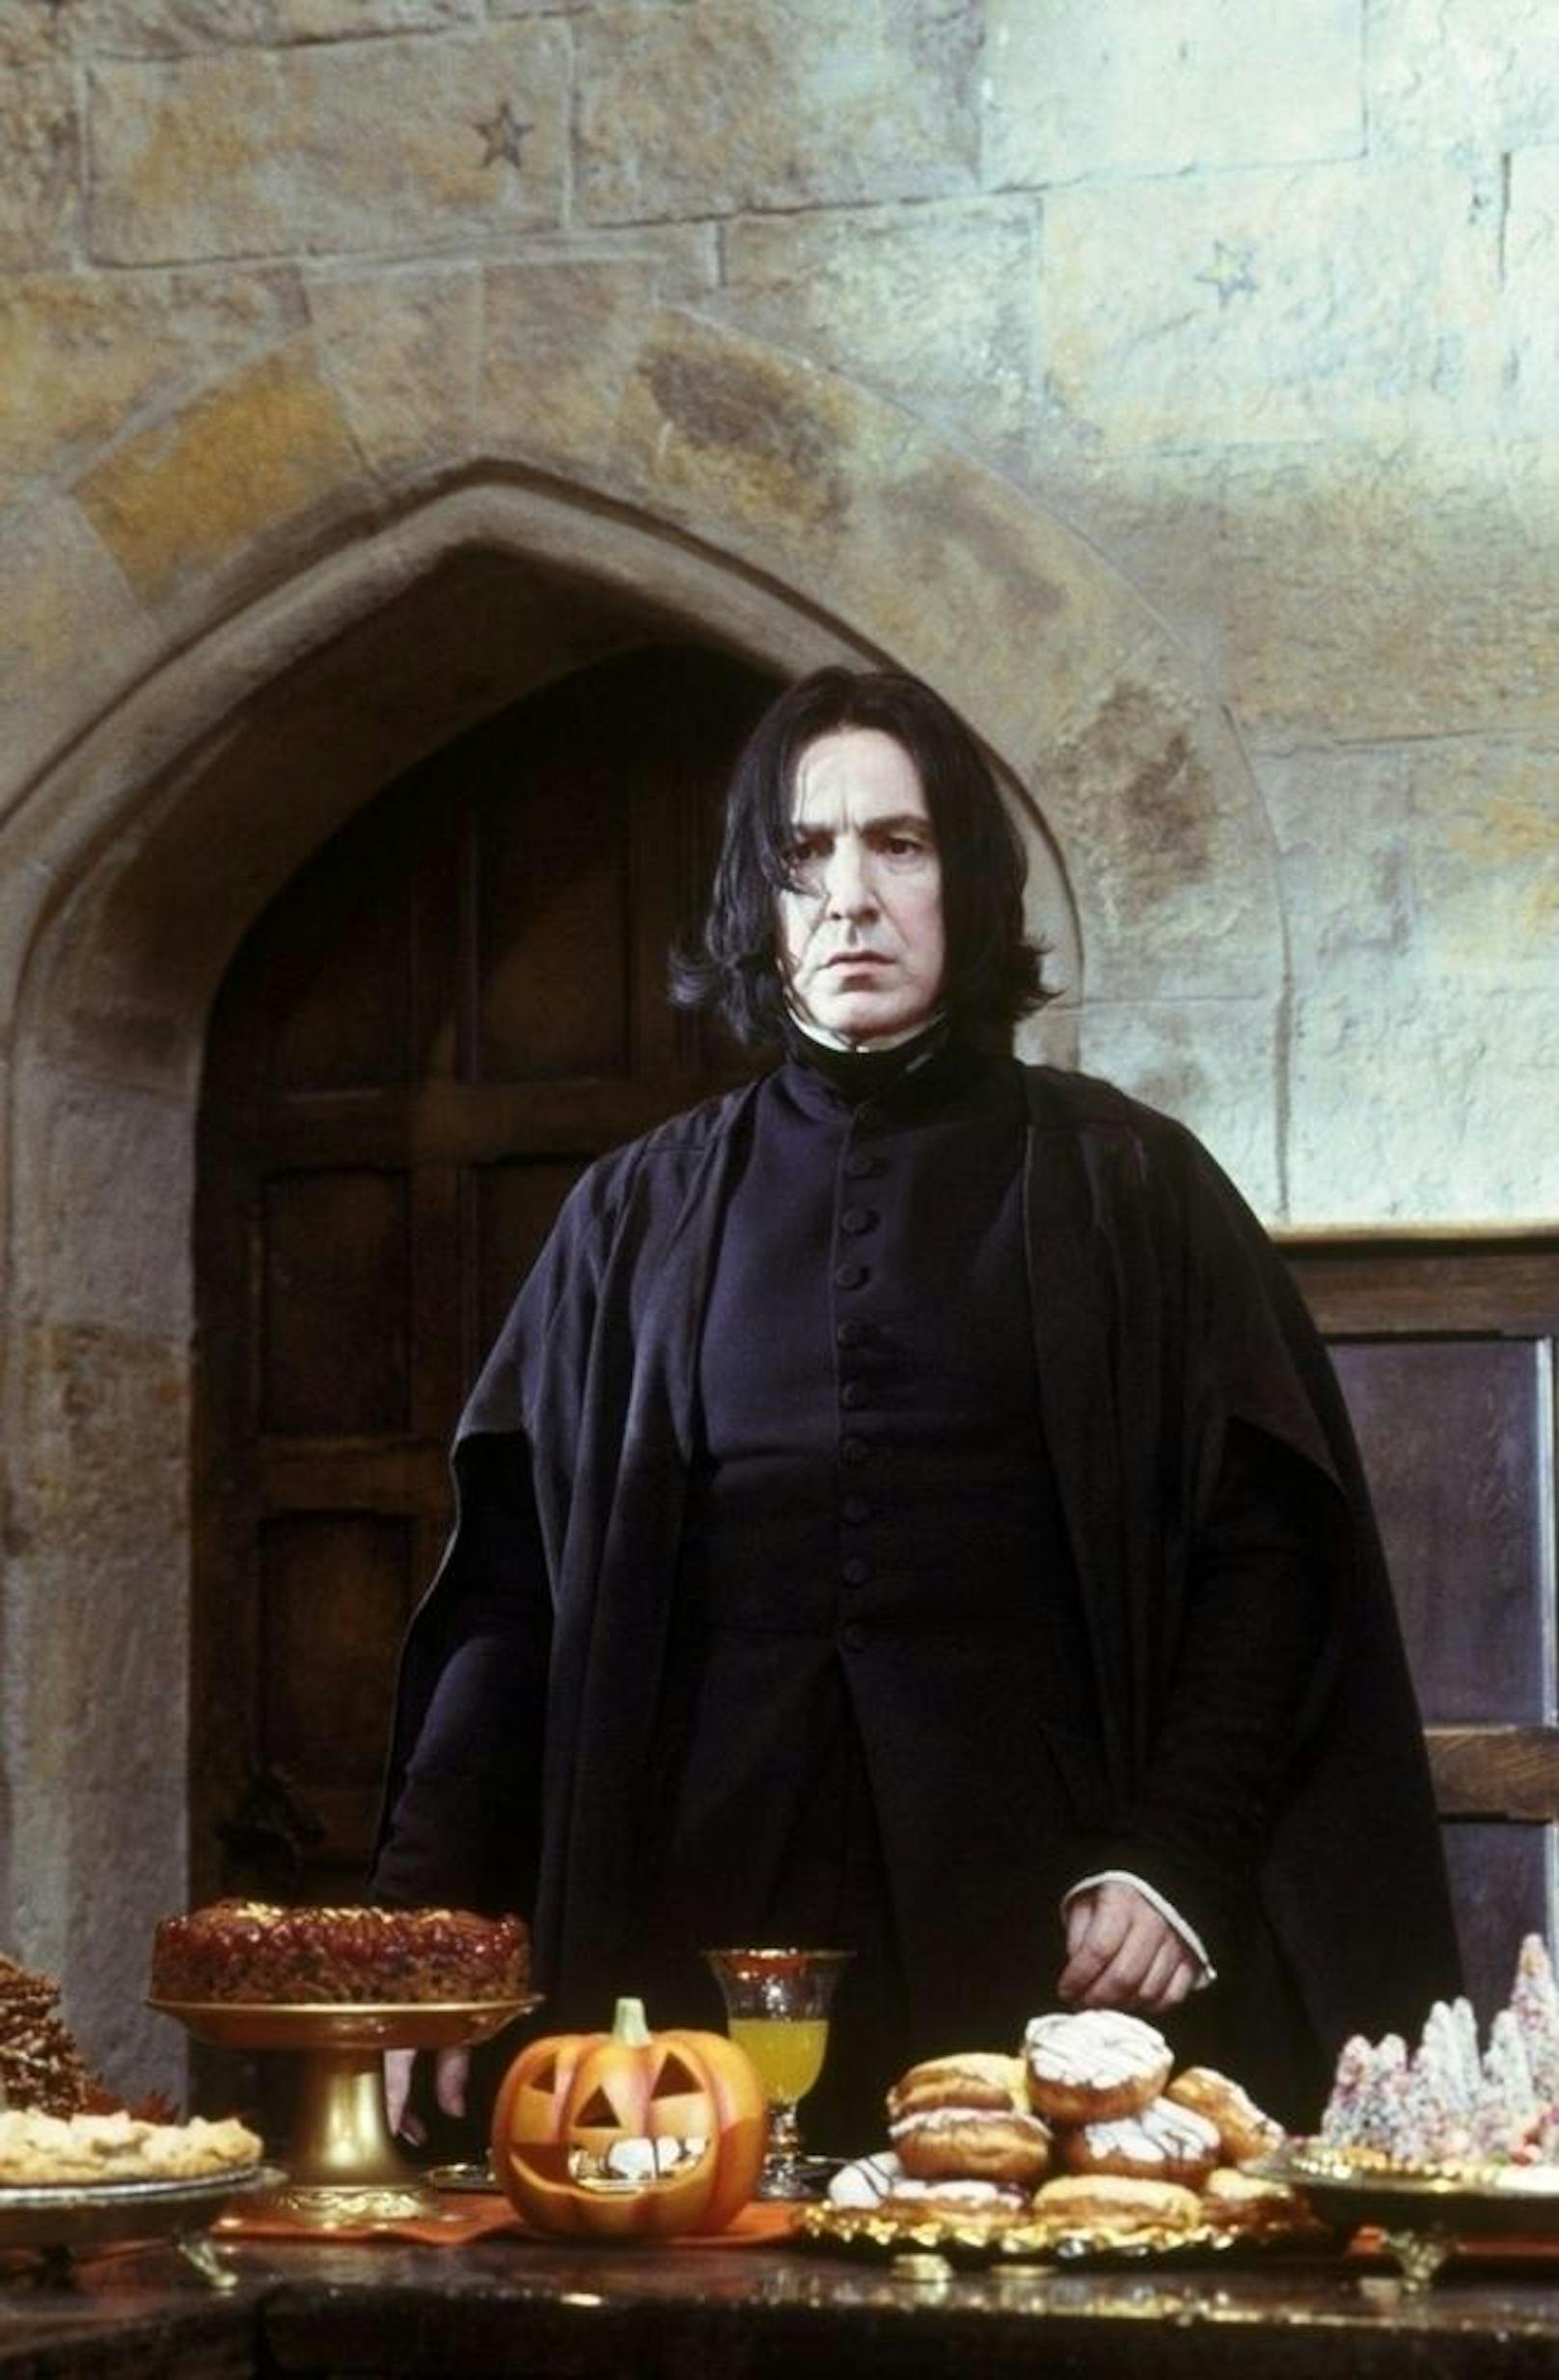 Alan Rickman als Severus Snape in "Harry Potter und der Stein der Weisen"